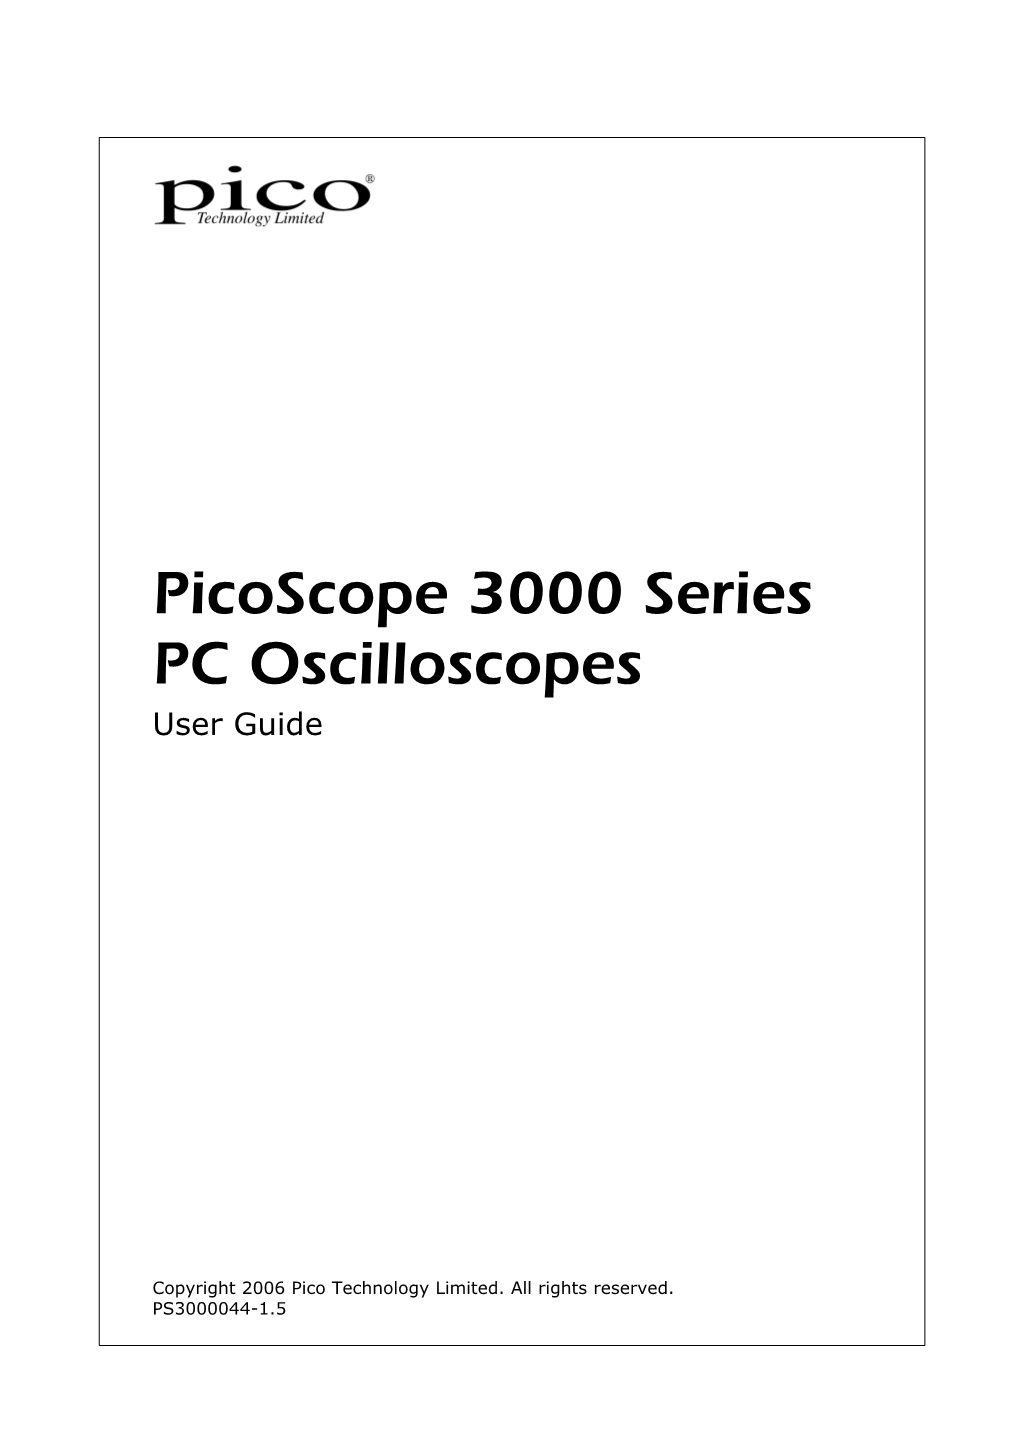 Picoscope 3000 Series PC Oscilloscopes User Guide